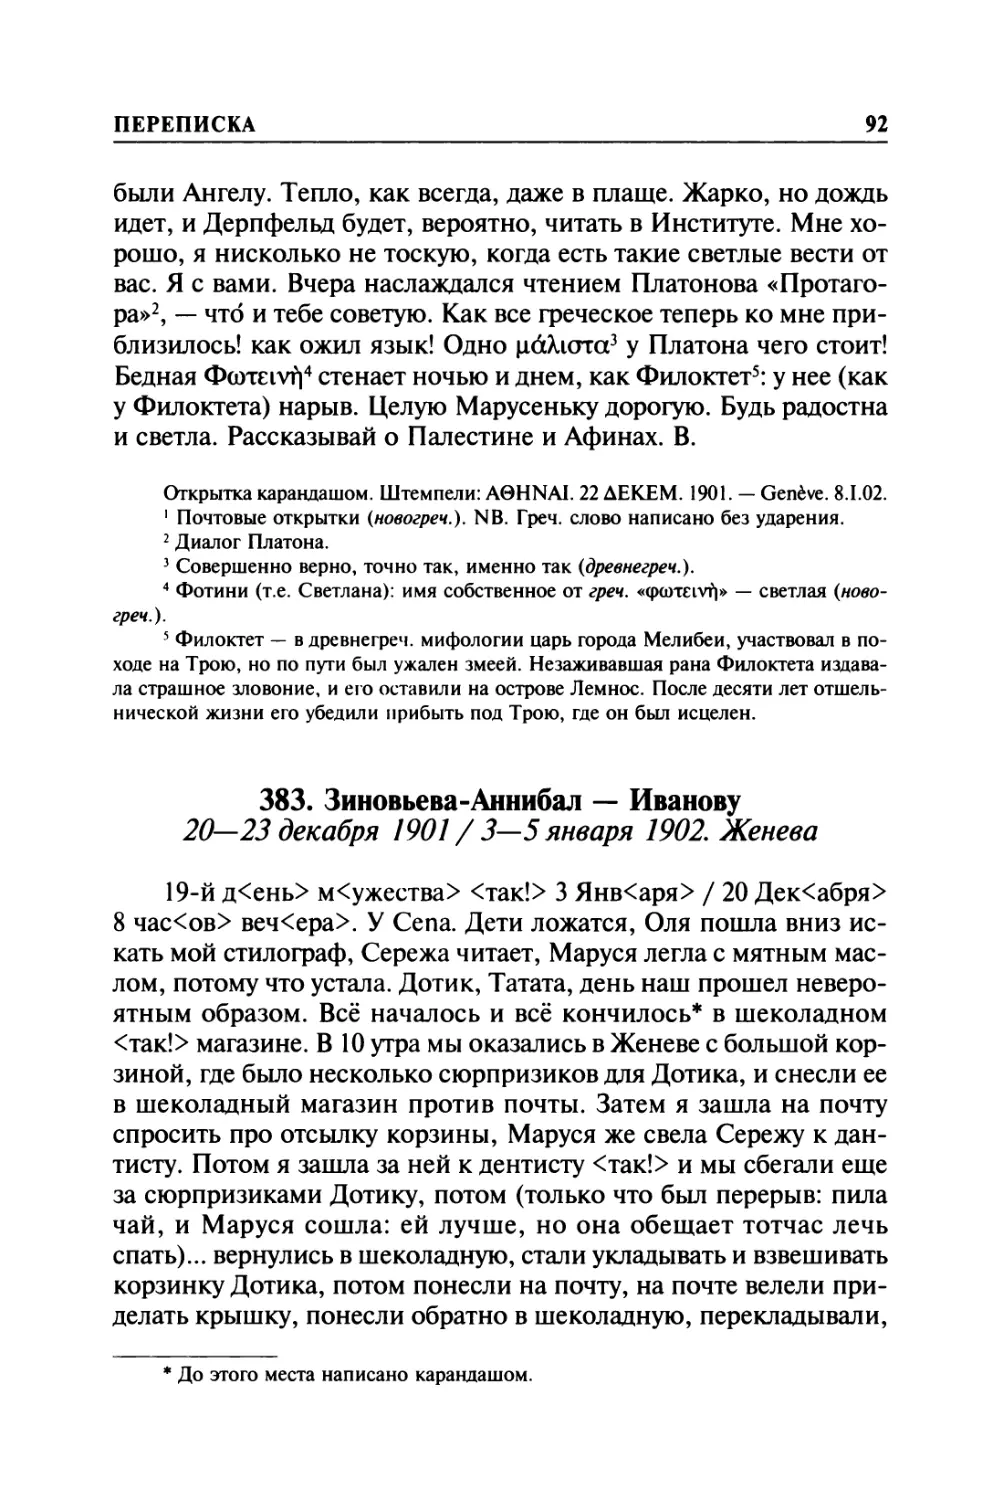 383. Зиновьева-Аннибал — Иванову. 20—23 декабря 1901 / 3—5 января 1902. Женева